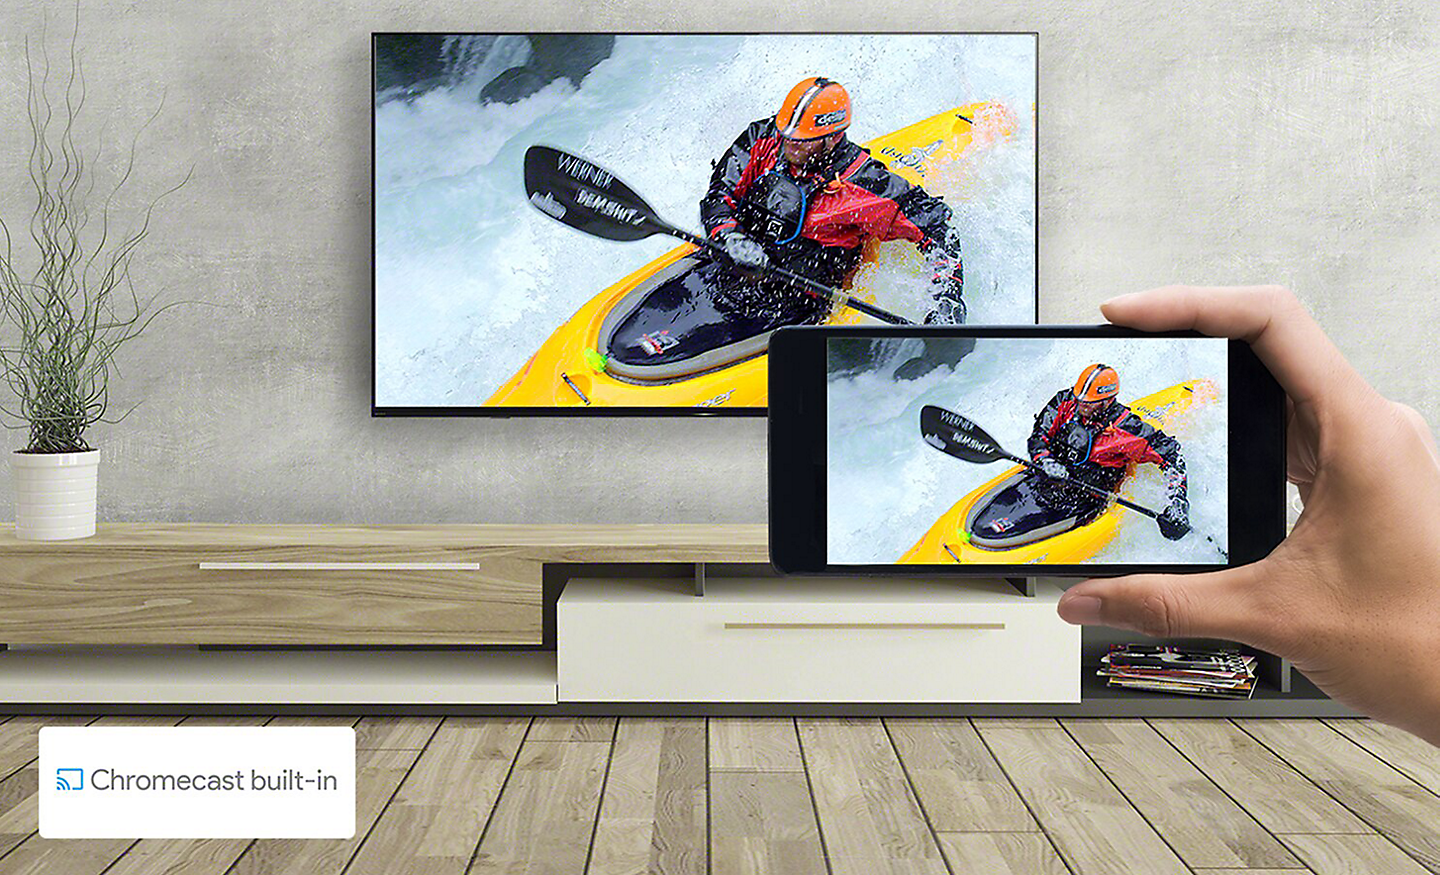 Una mano sostiene un smartphone frente a una TV montada en la pared. En ambas pantallas se ve la misma imagen de piragüismo. Un logotipo de Chromecast built-in aparece en la parte inferior izquierda.